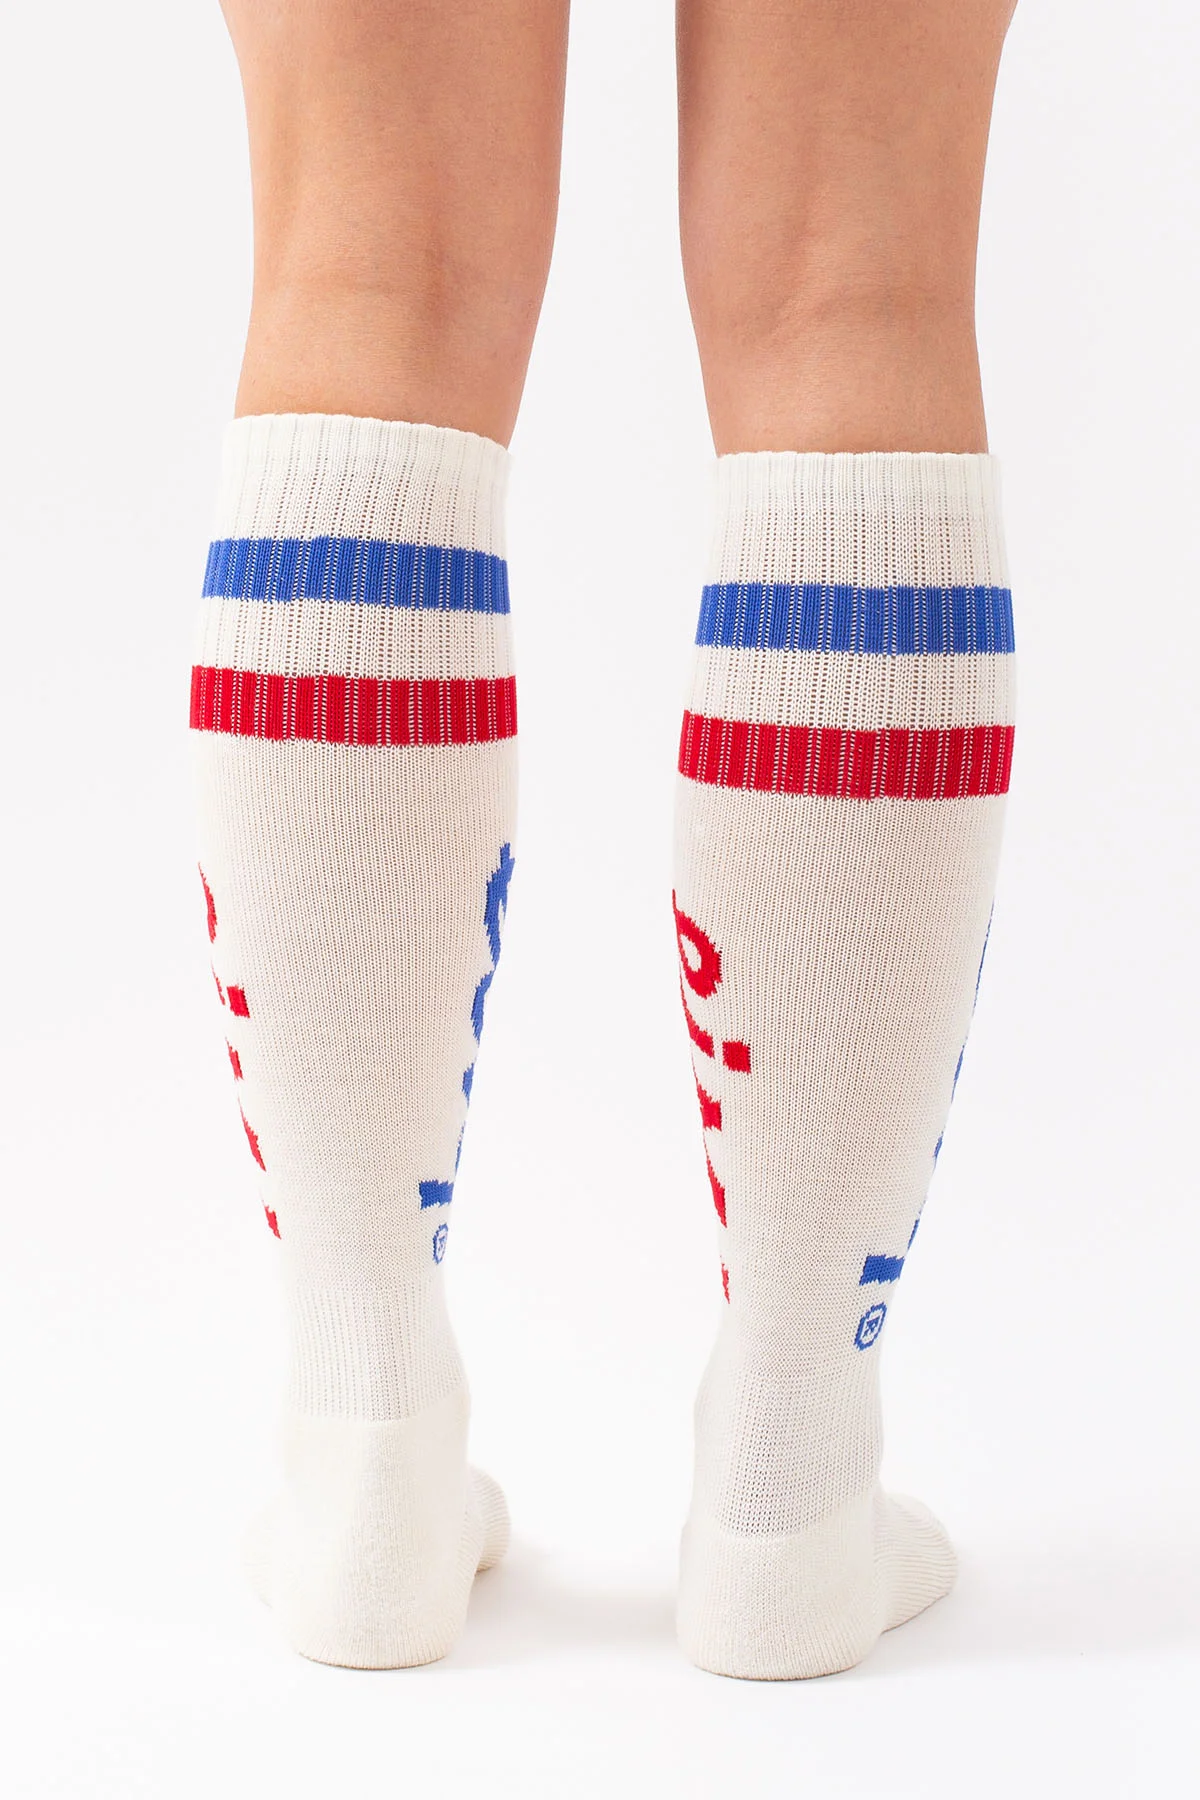 Cheerleader Wool Socks - Offwhite